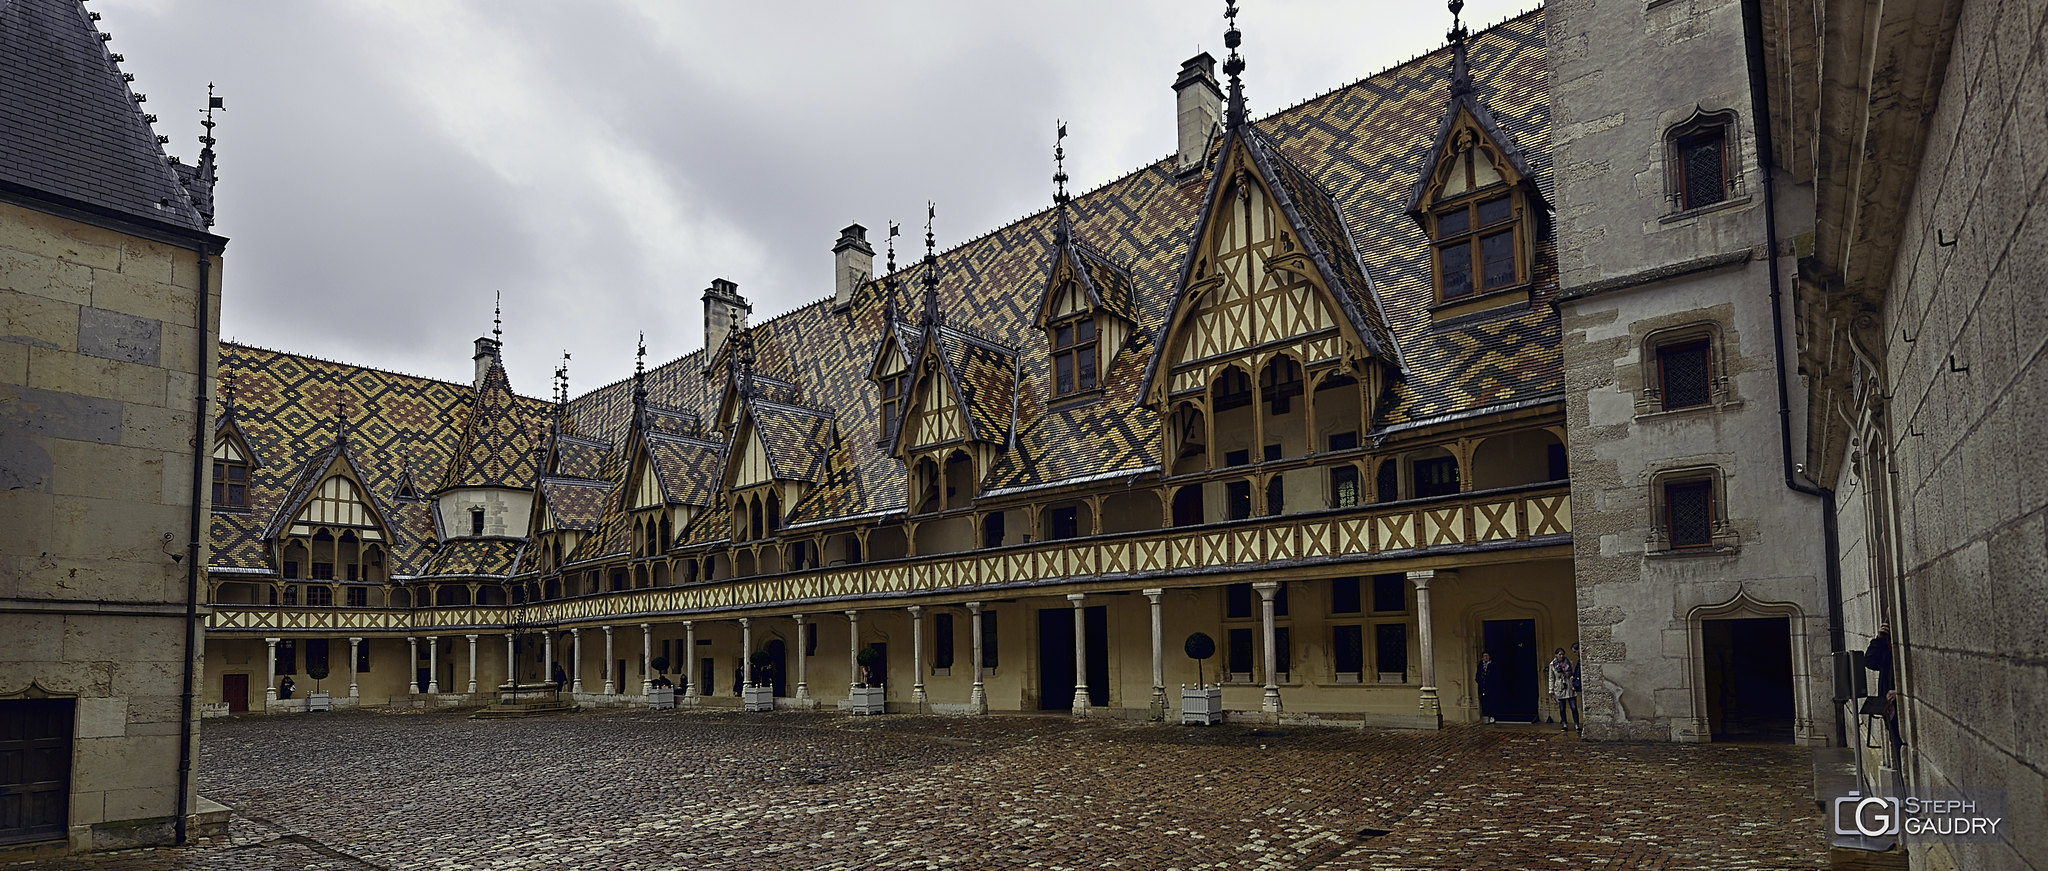 Cour intérieure des hospices de Beaune [Click to start slideshow]